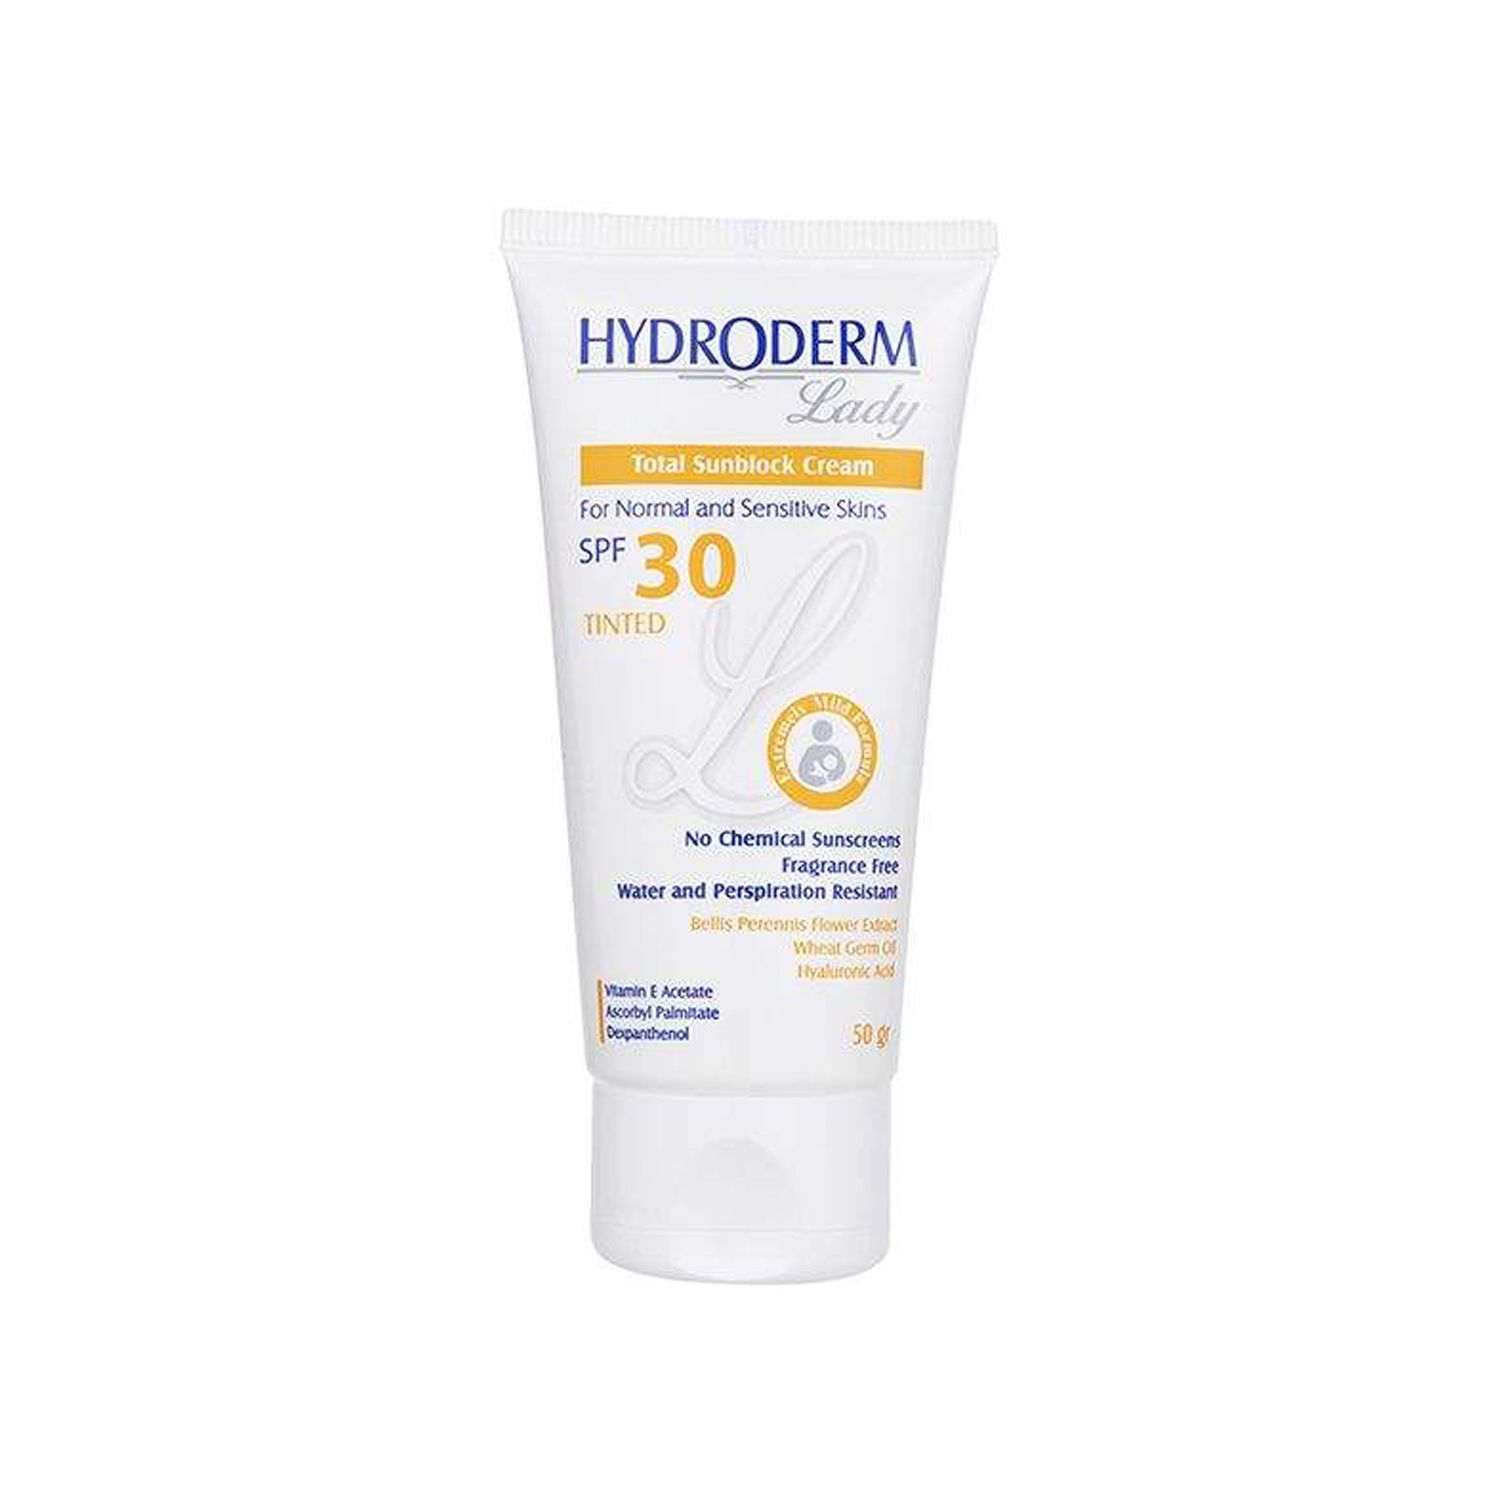 کرم ضد آفتاب رنگی هیدرودرم مدل Normal & Sensitive skins SPF30 وزن 50 گرم - رنگ طبیعی